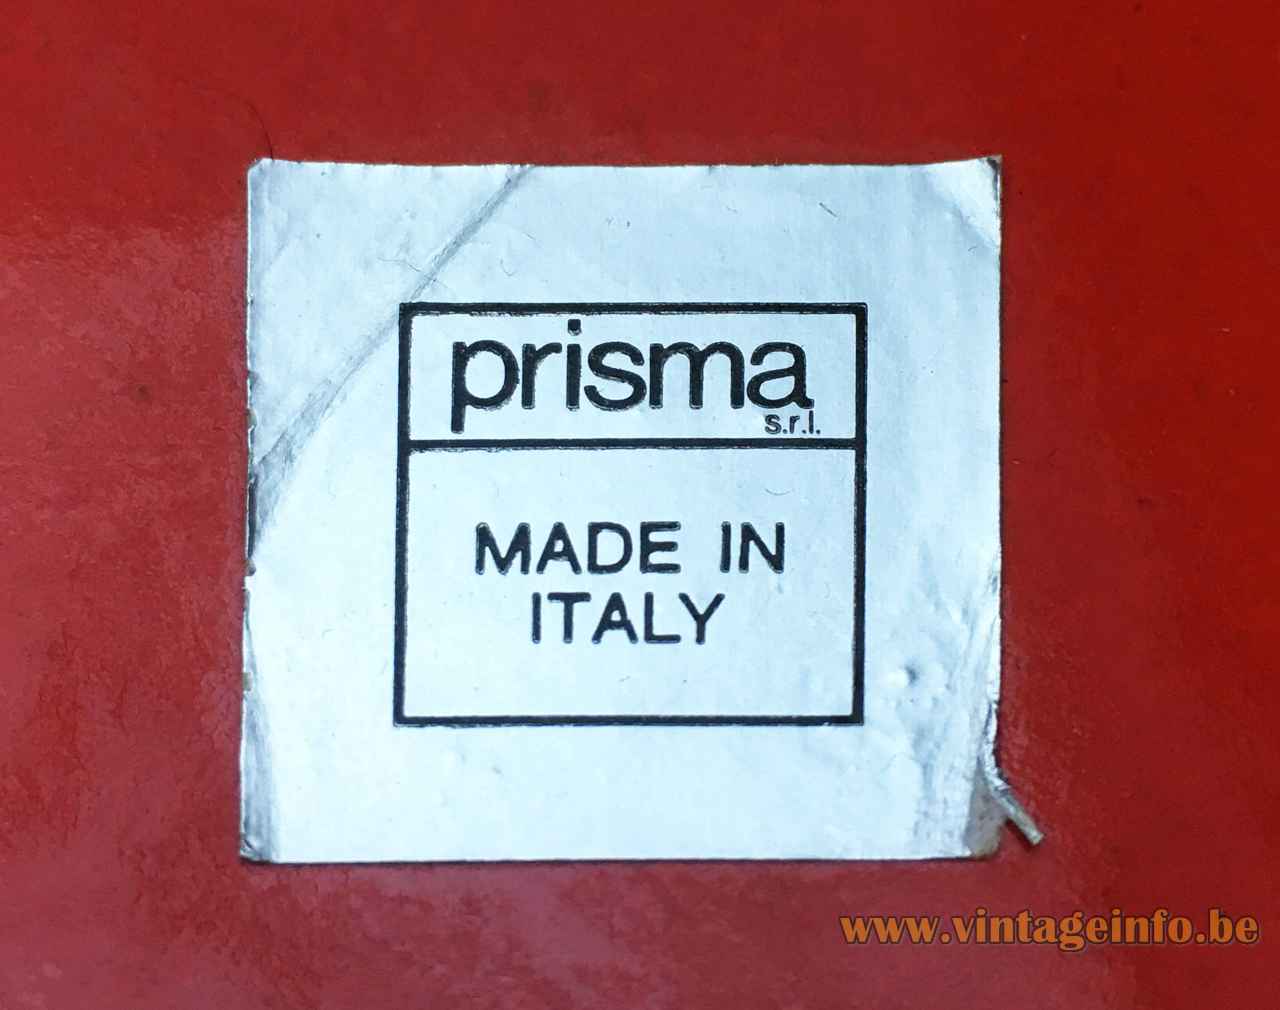 Prisma ceramic table lamp square label Made in Italy Prisma srl 1970s 